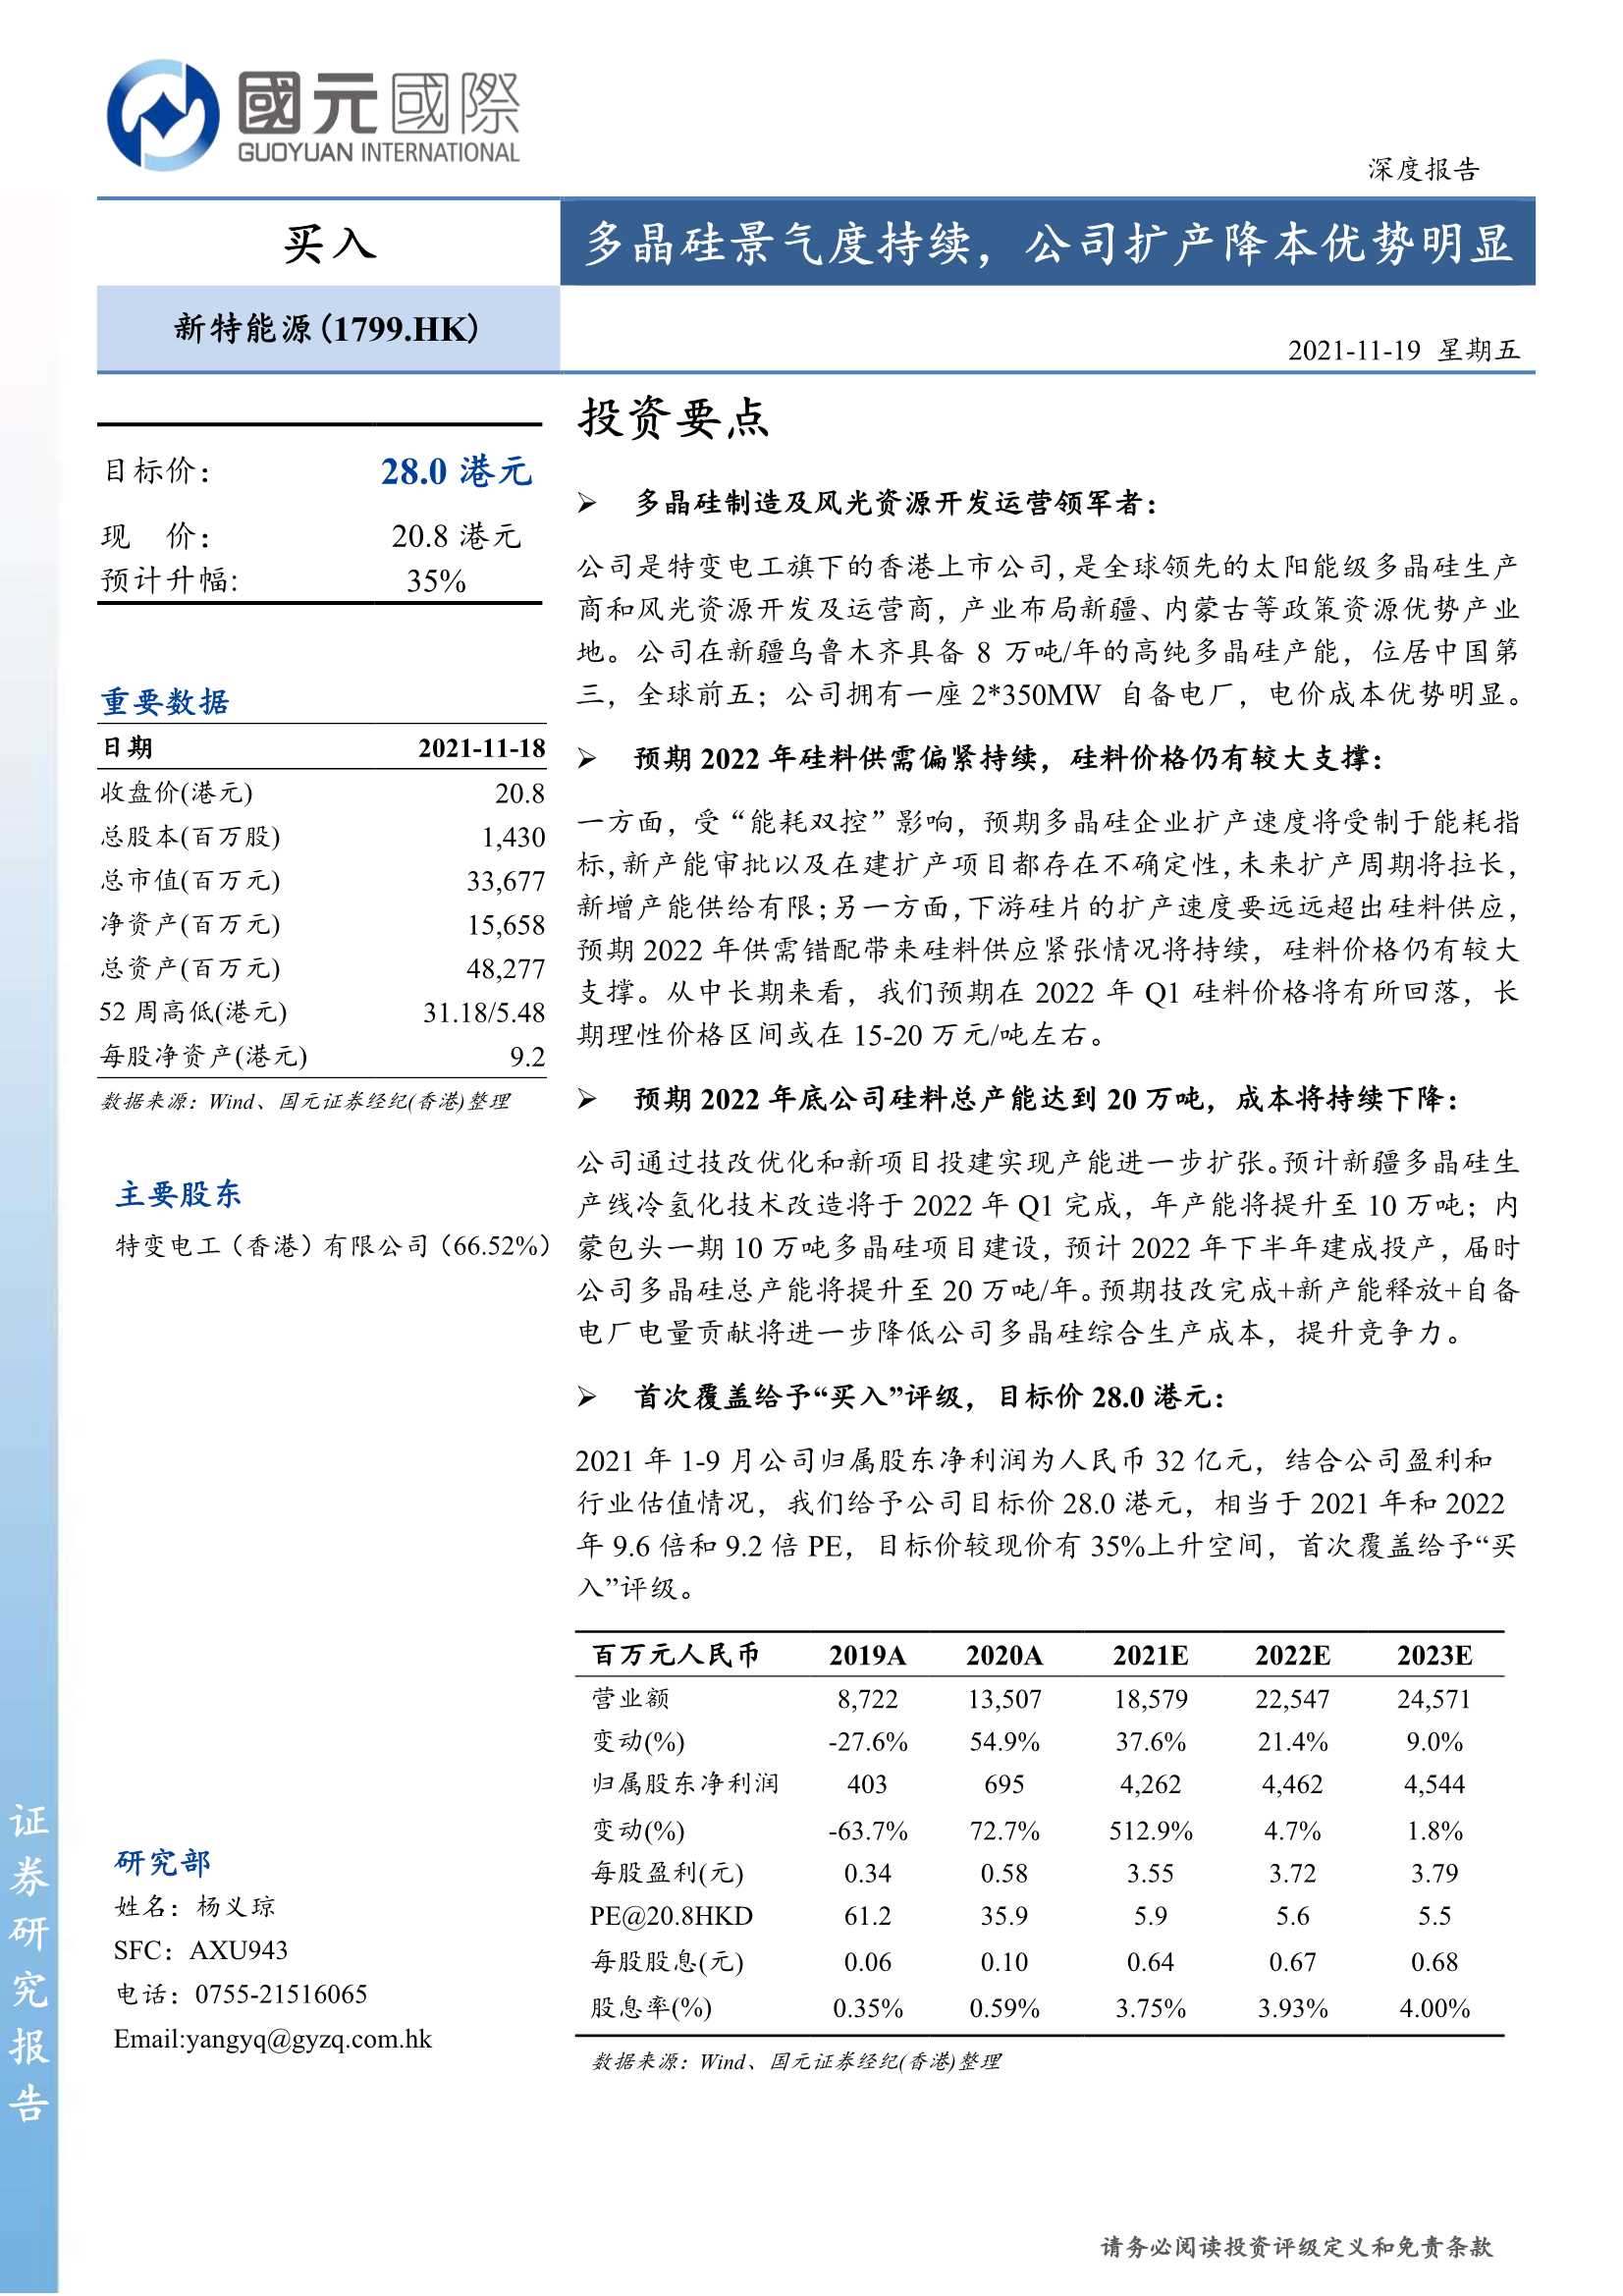 国元国际-新特能源-1799.HK-多晶硅景气度持续，公司扩产降本优势明显-20211119-29页